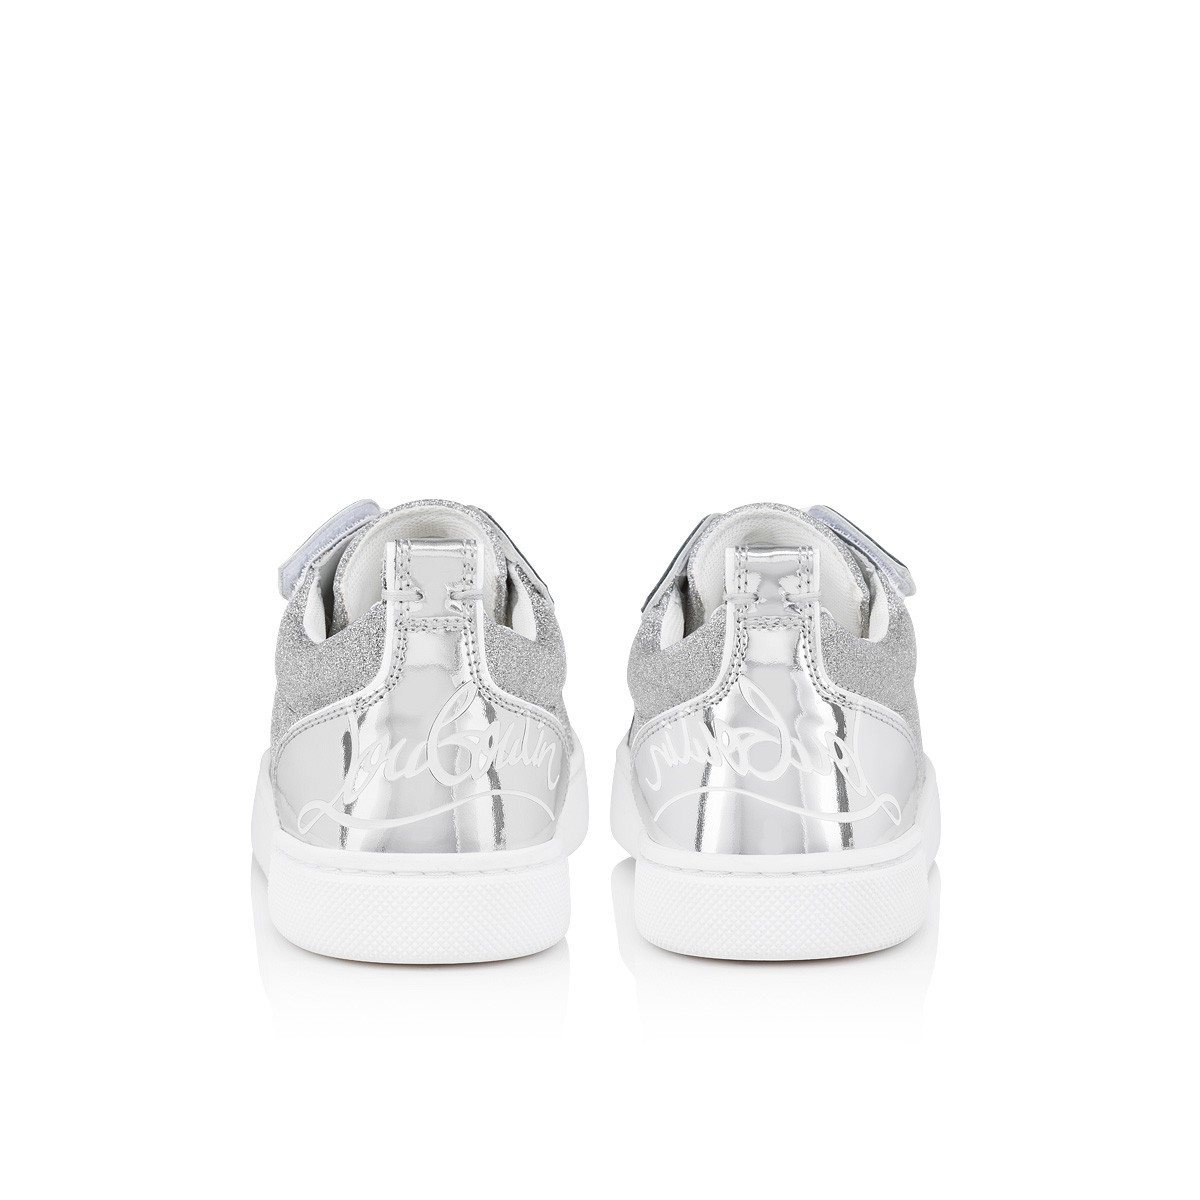 Sneaker Christian Louboutin - Sneaker - Silber - 3200159W129